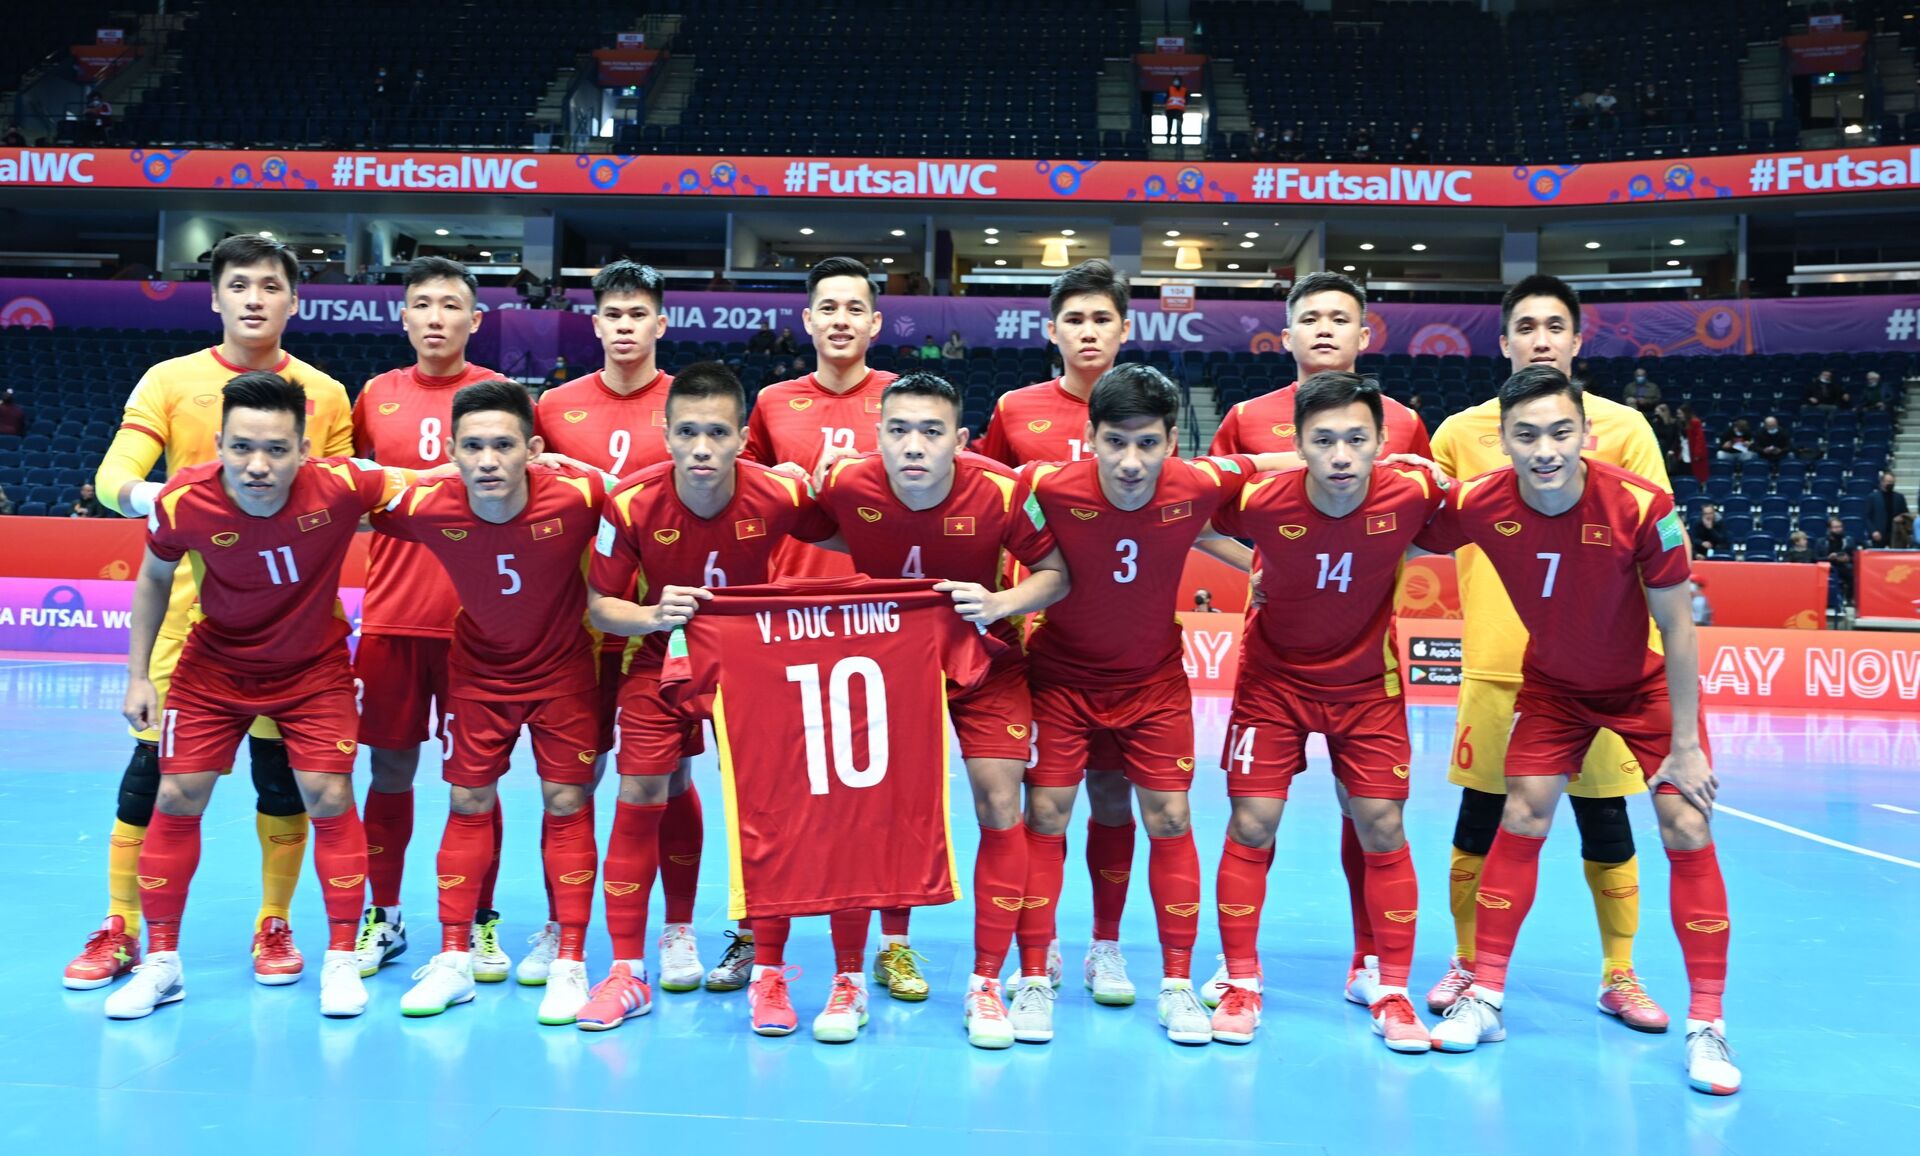 VCK Futsal World Cup 2021: Thua sát nút Á quân thế giới, tuyển Việt Nam chia tay World Cup futsal 2021 - Sputnik Việt Nam, 1920, 05.10.2021